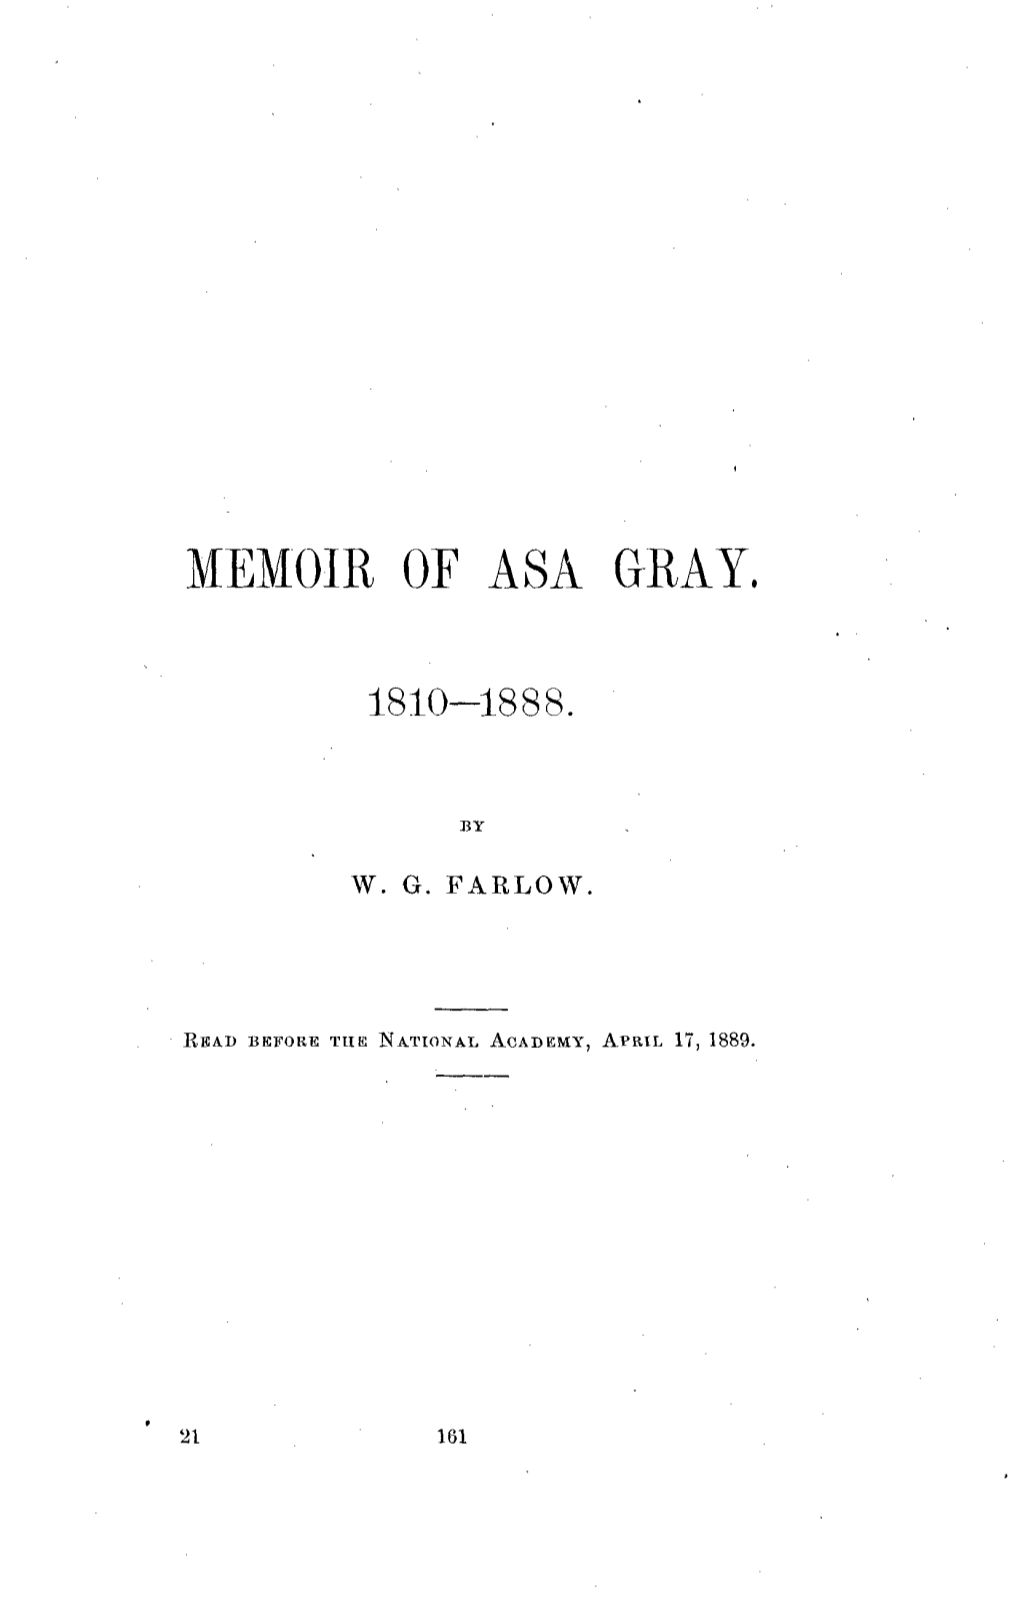 Memoir of Asa Gray